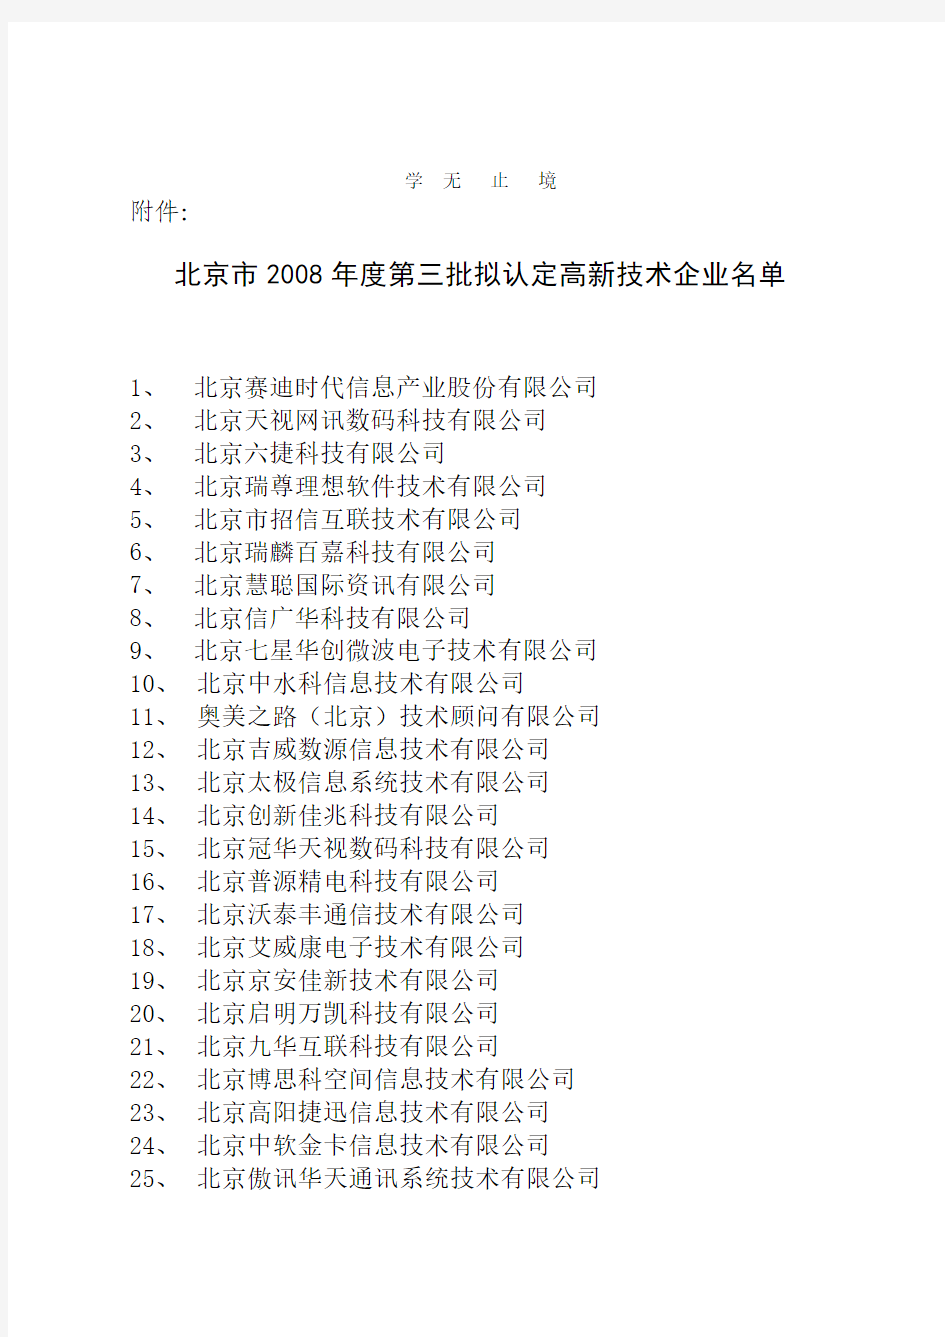 北京市度第三批拟认定高新技术企业名单.pdf